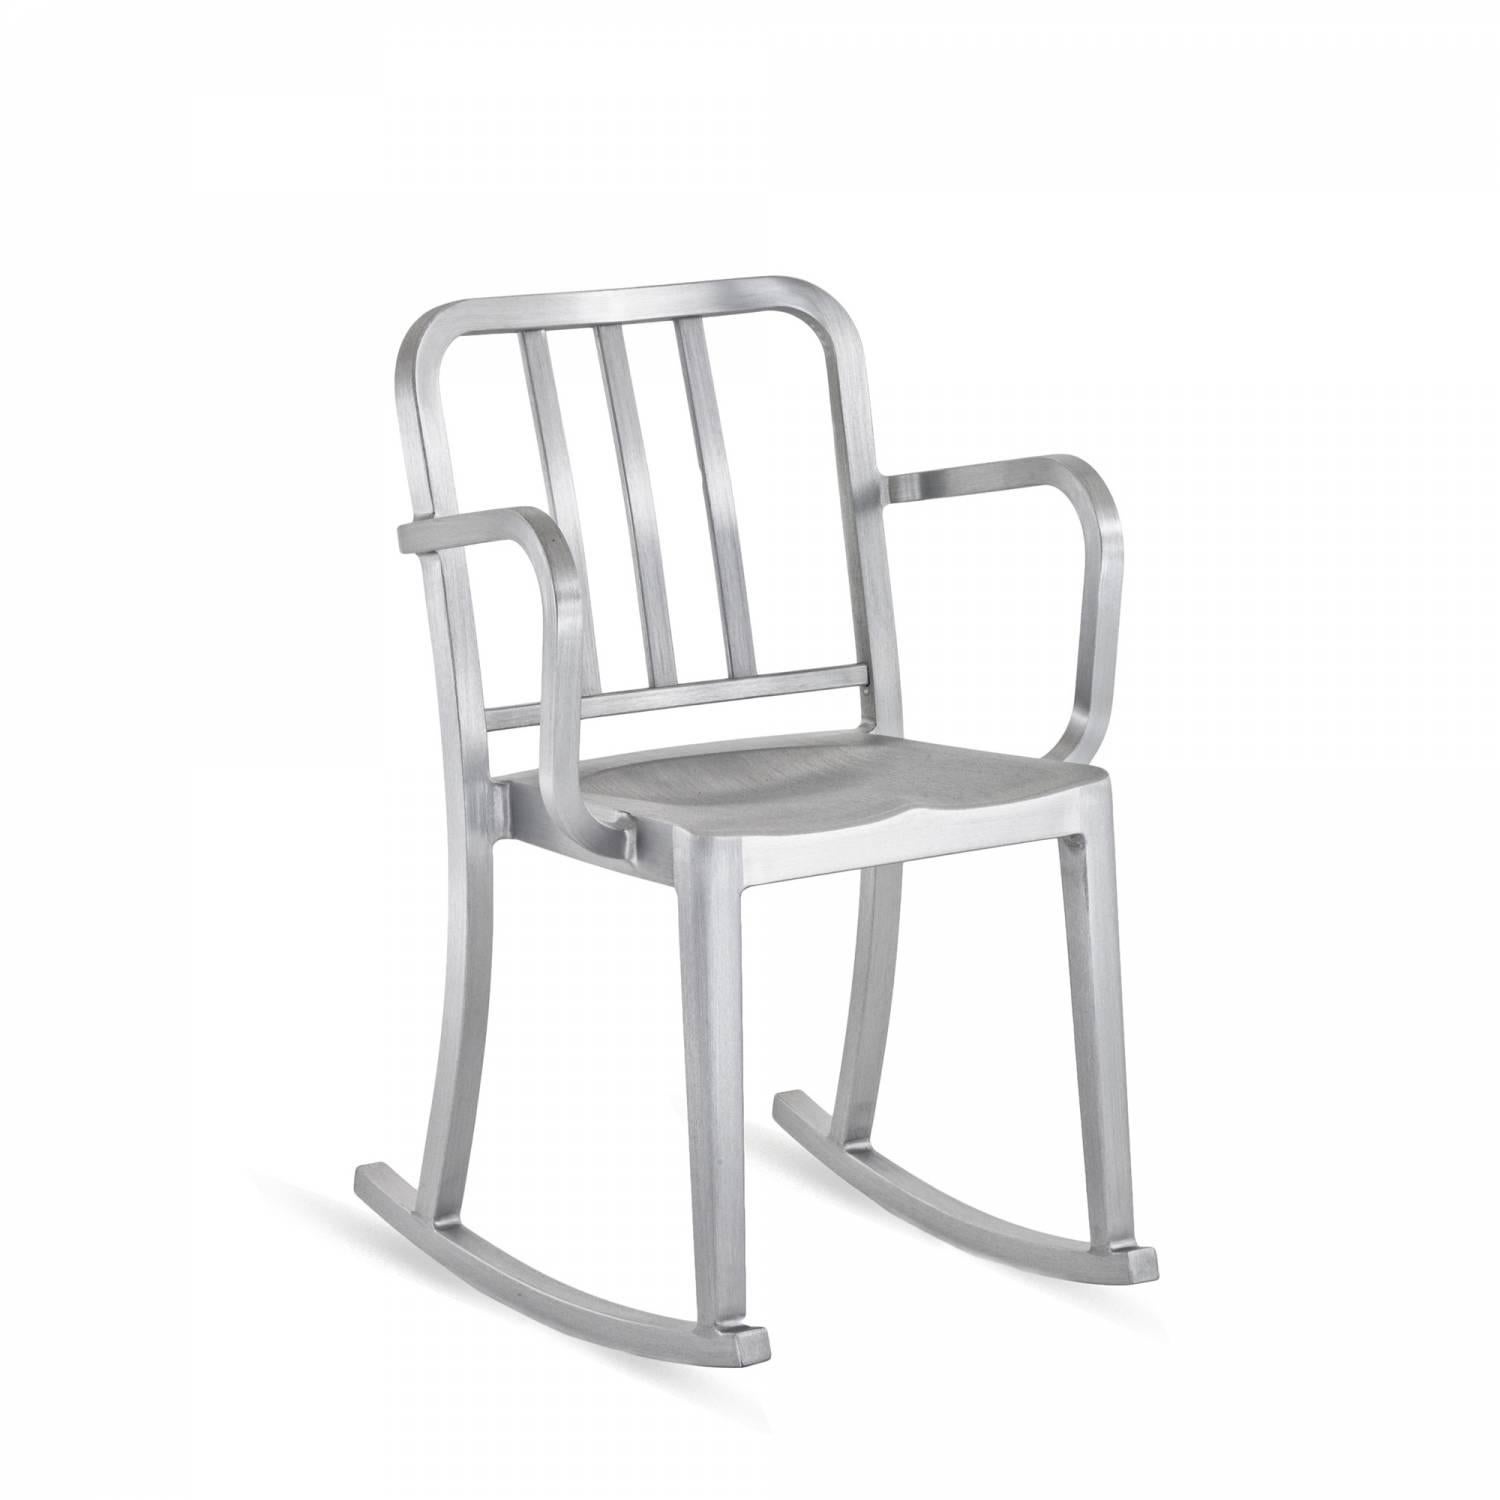 Heritage est une chaise empilable conçue par Philippe Starck, inspirée par le modèle original 1006 Navy. La version à bascule a été conçue pour le célèbre restaurant Bon à Paris. Conçue comme une chaise 